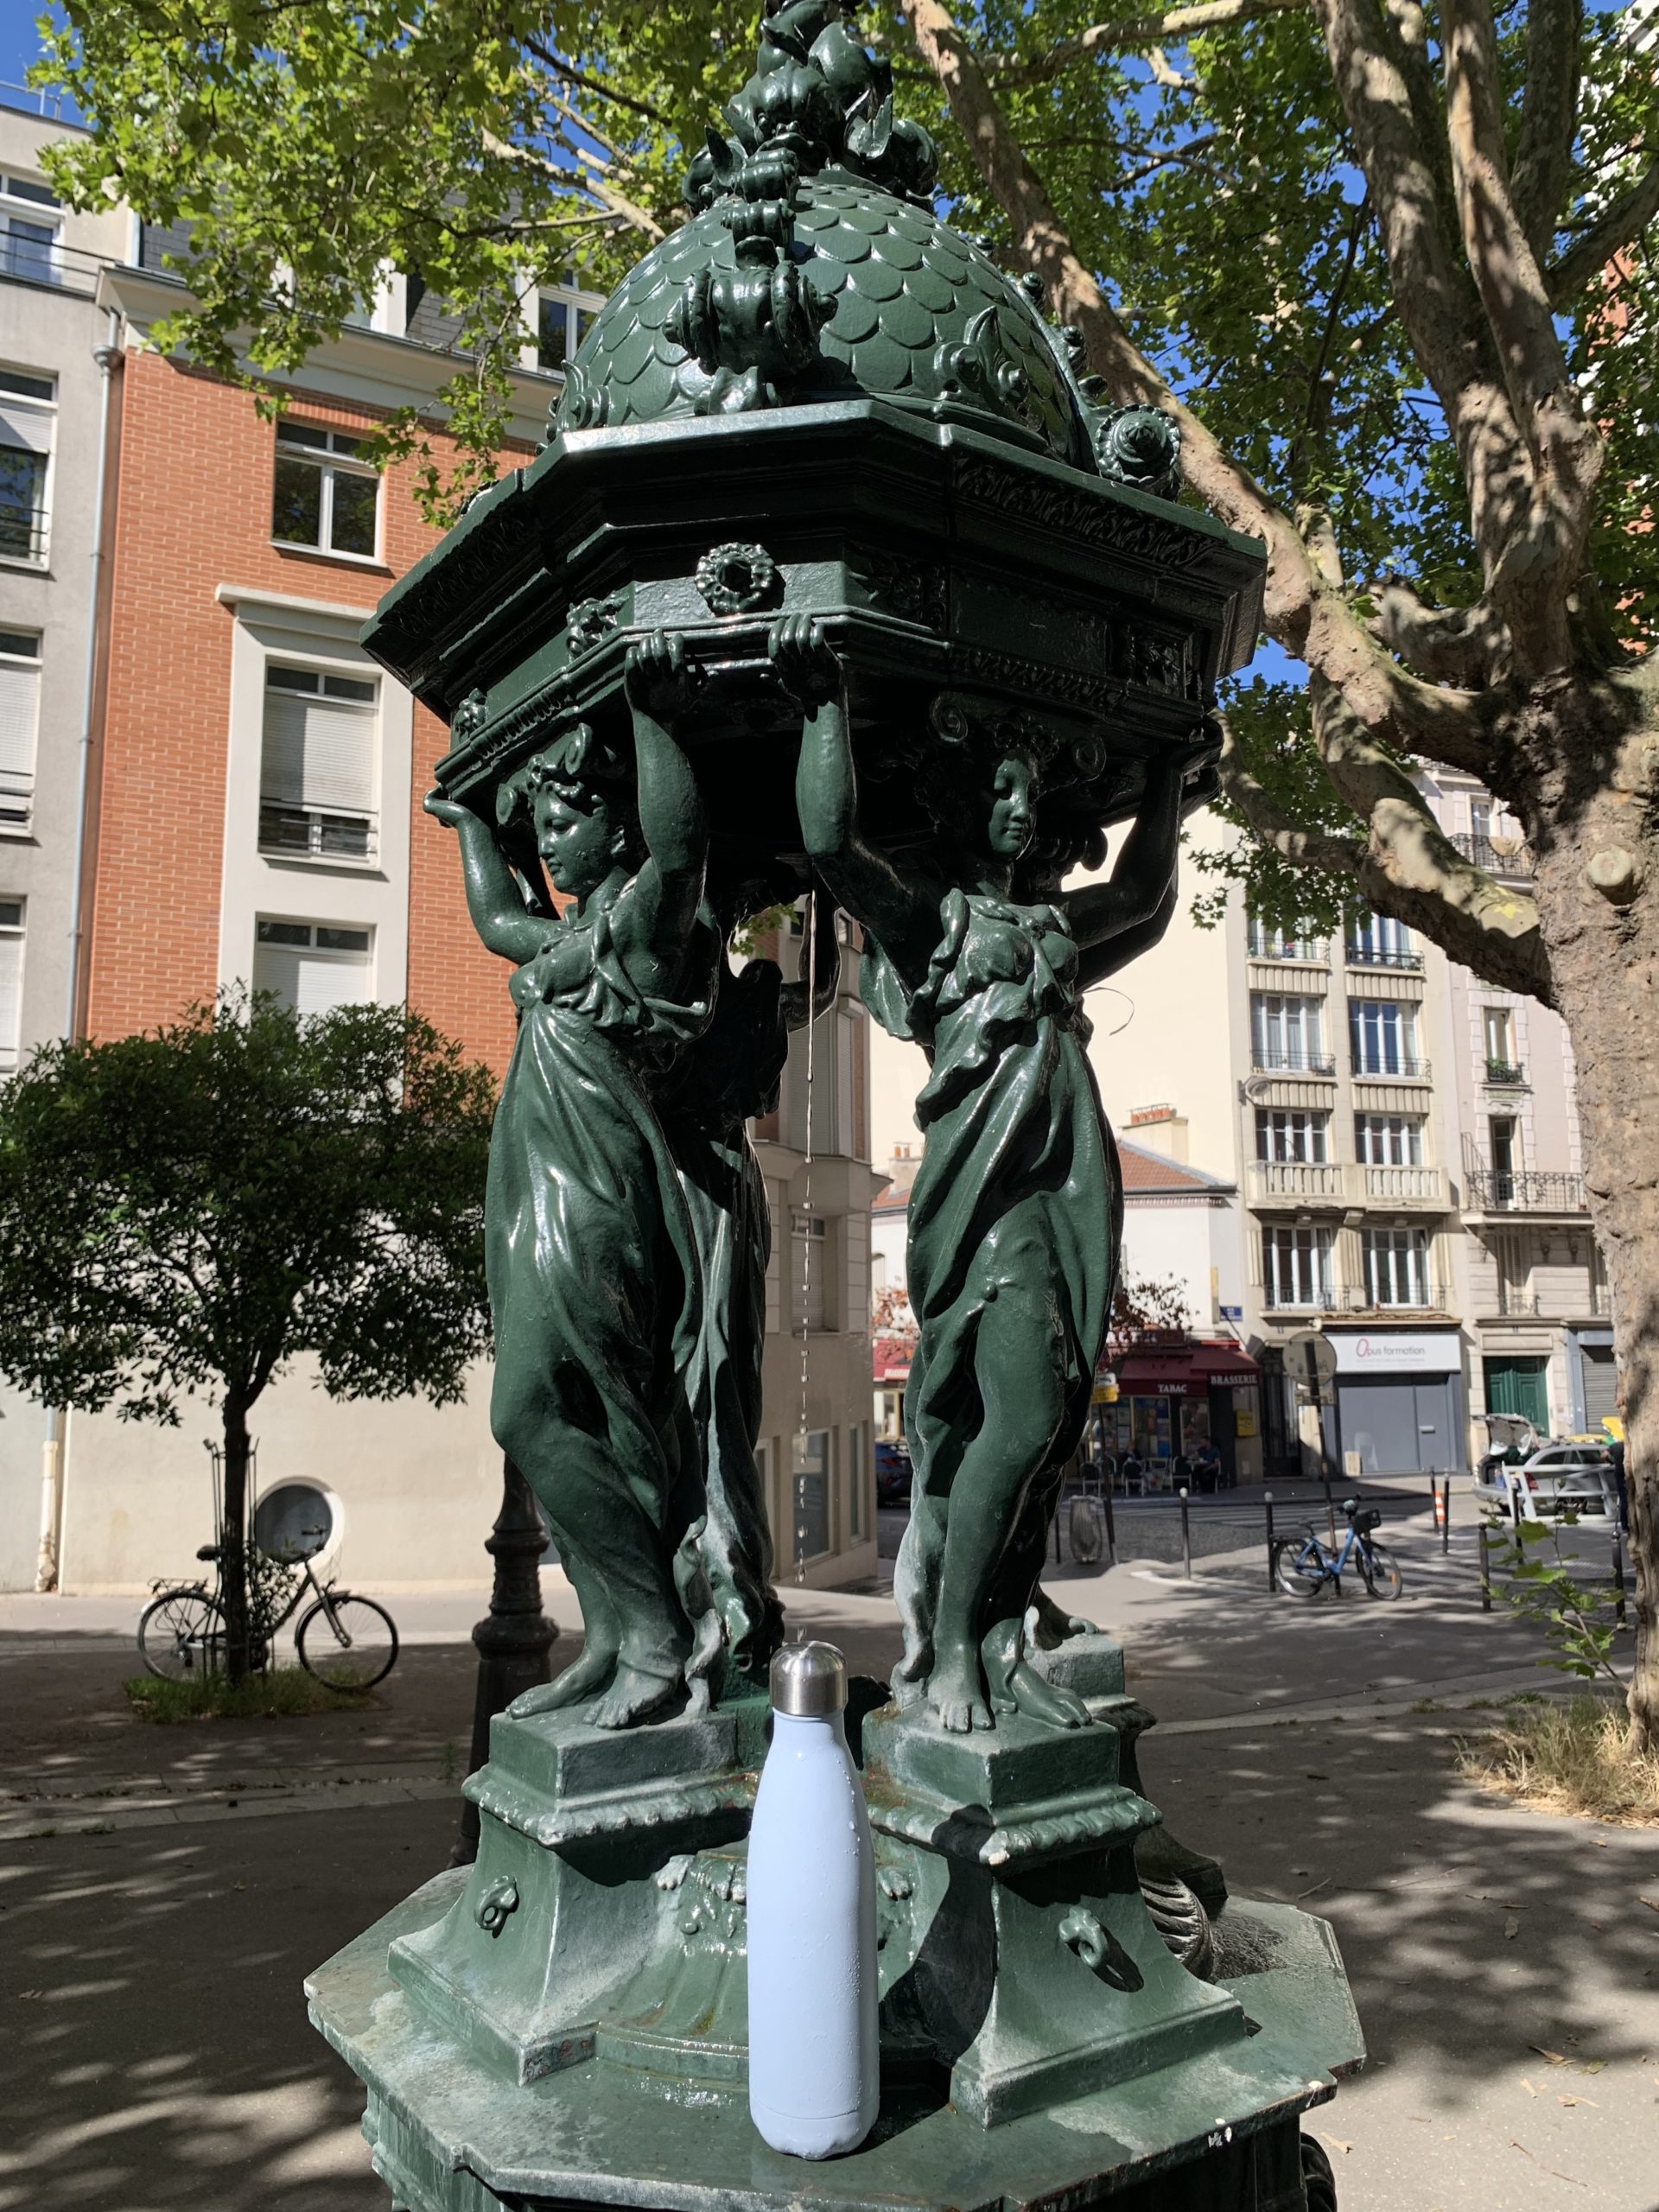 Où remplir gratuitement sa gourde d’eau dans le 20e arrondissement de Paris ?